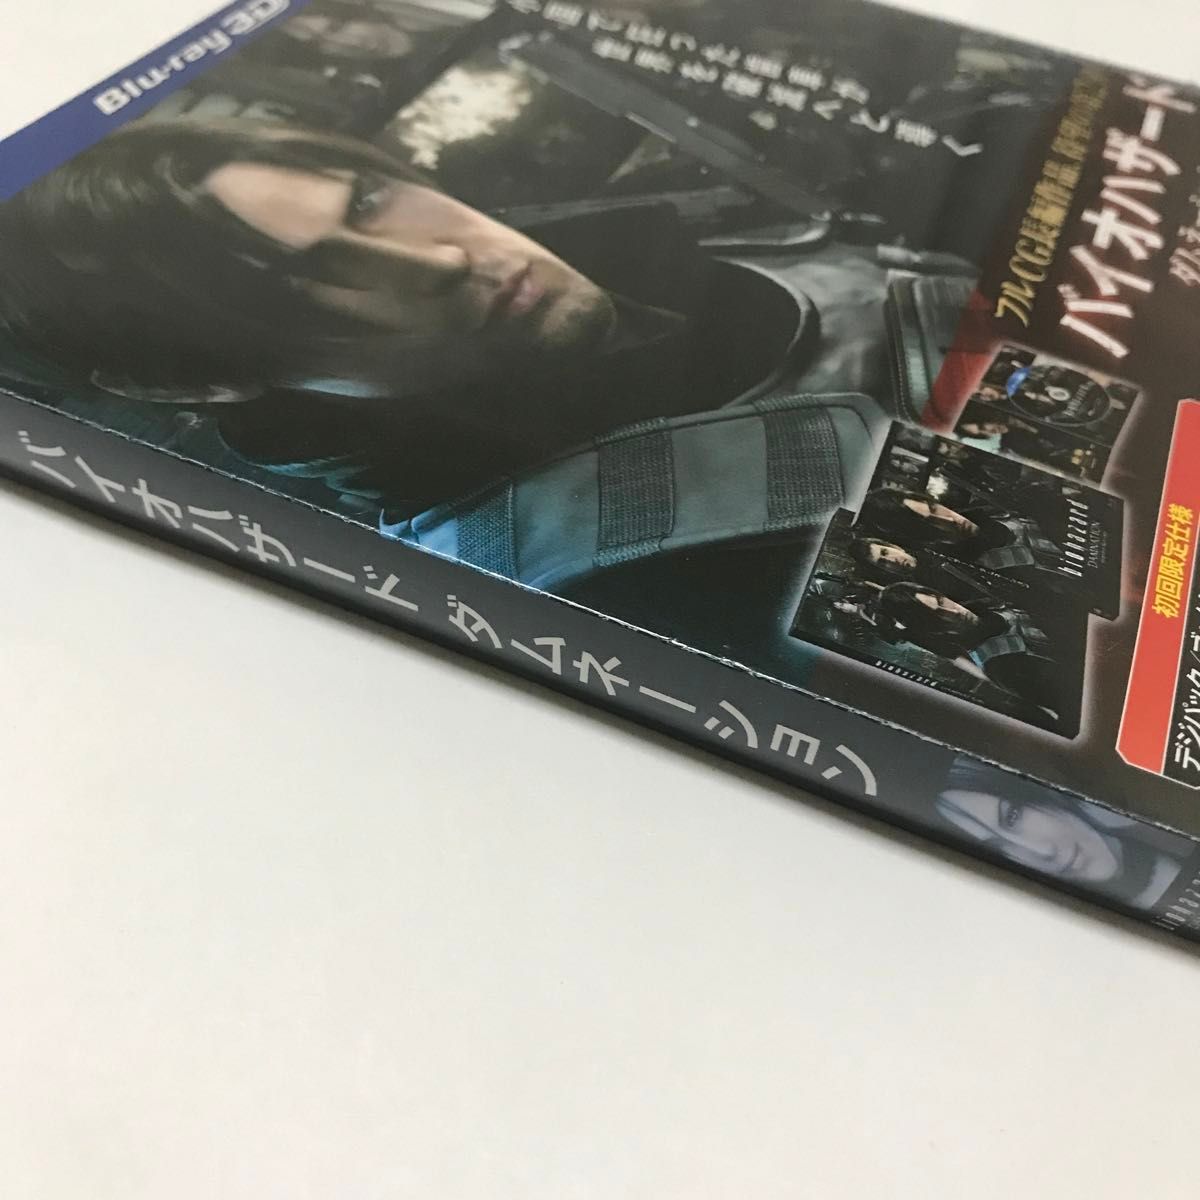 【新品未開封】 BD 3D バイオハザード ダムネーション ブルーレイ IN 3D (初回限定仕様) (Blu-ray Disc)